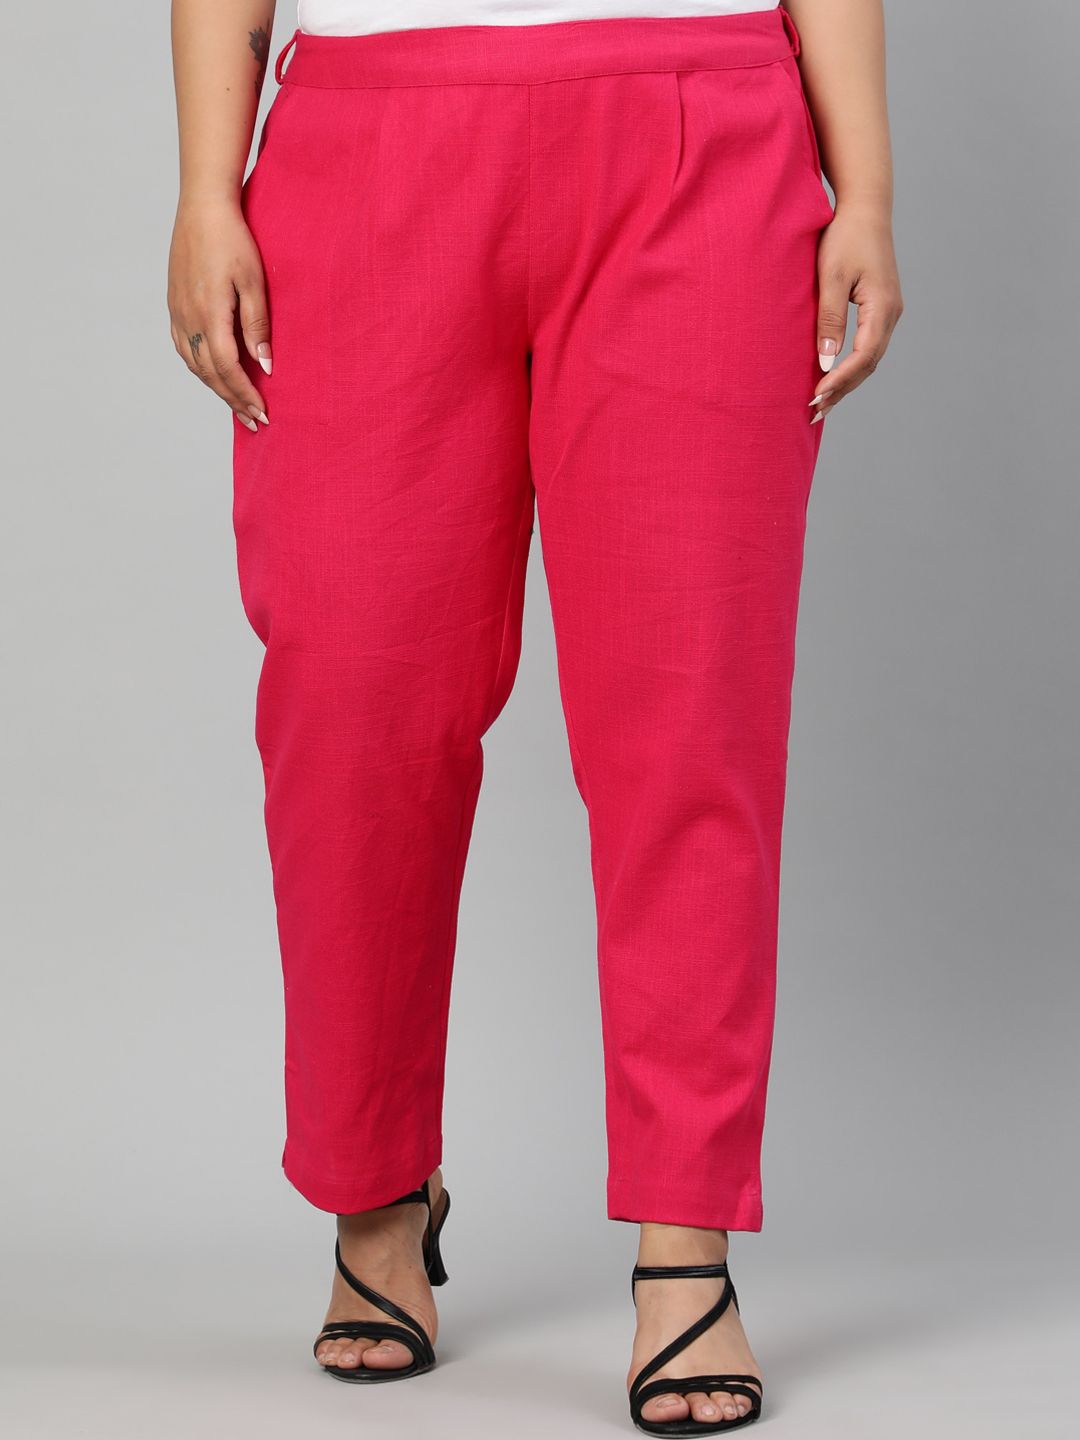 Jaipur Kurti Women Pink Cropped Solid Regular Trousers Price in India